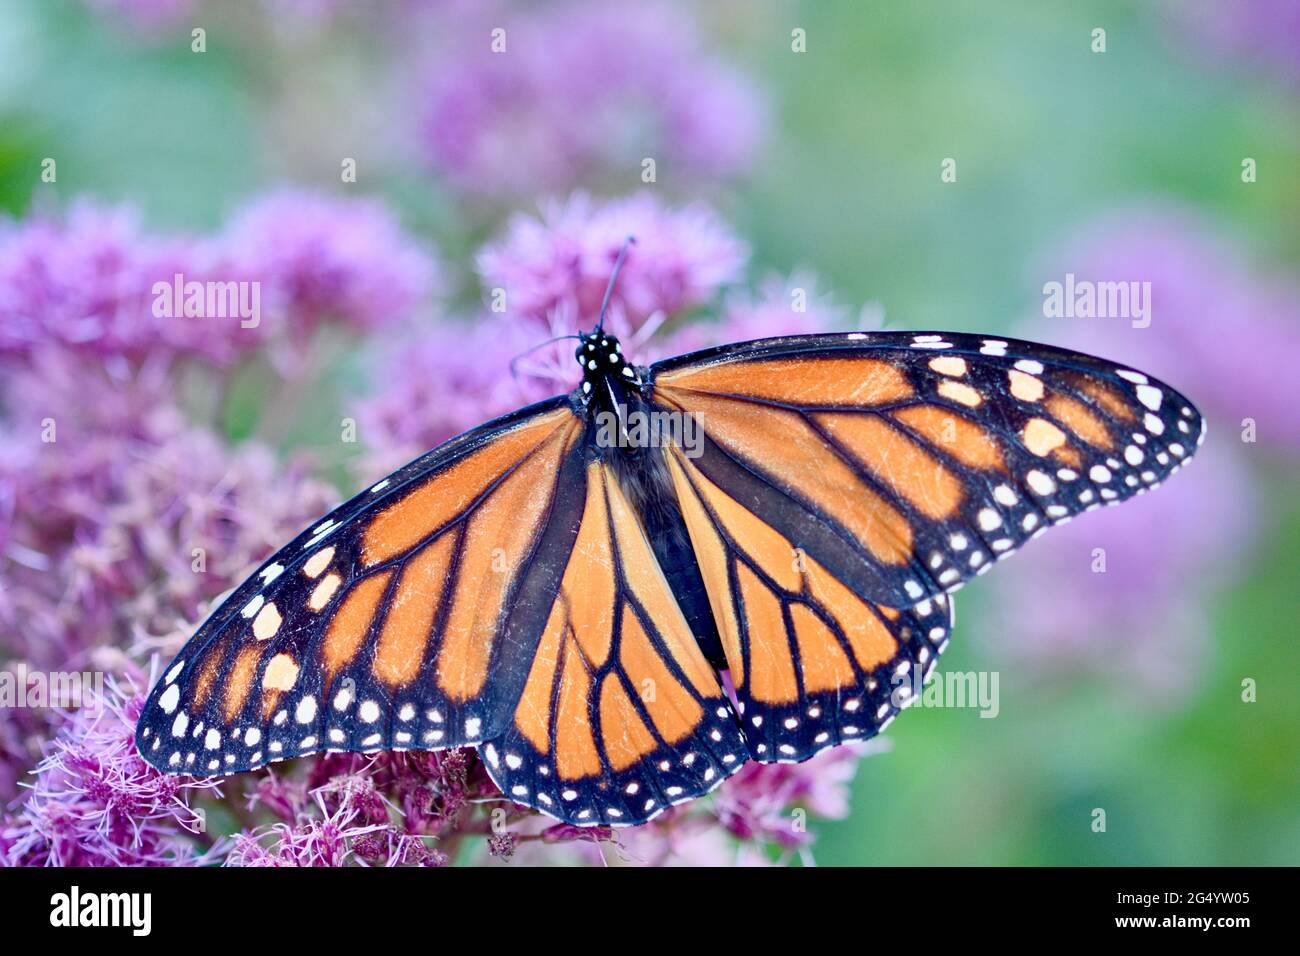 Vista superior de una mariposa monarca (Danaus plexippus) con alas abiertas y alimentación en las flores rosadas de Joe-Pye Weed (Eupatorium purpureum). Espacio de copia. Foto de stock